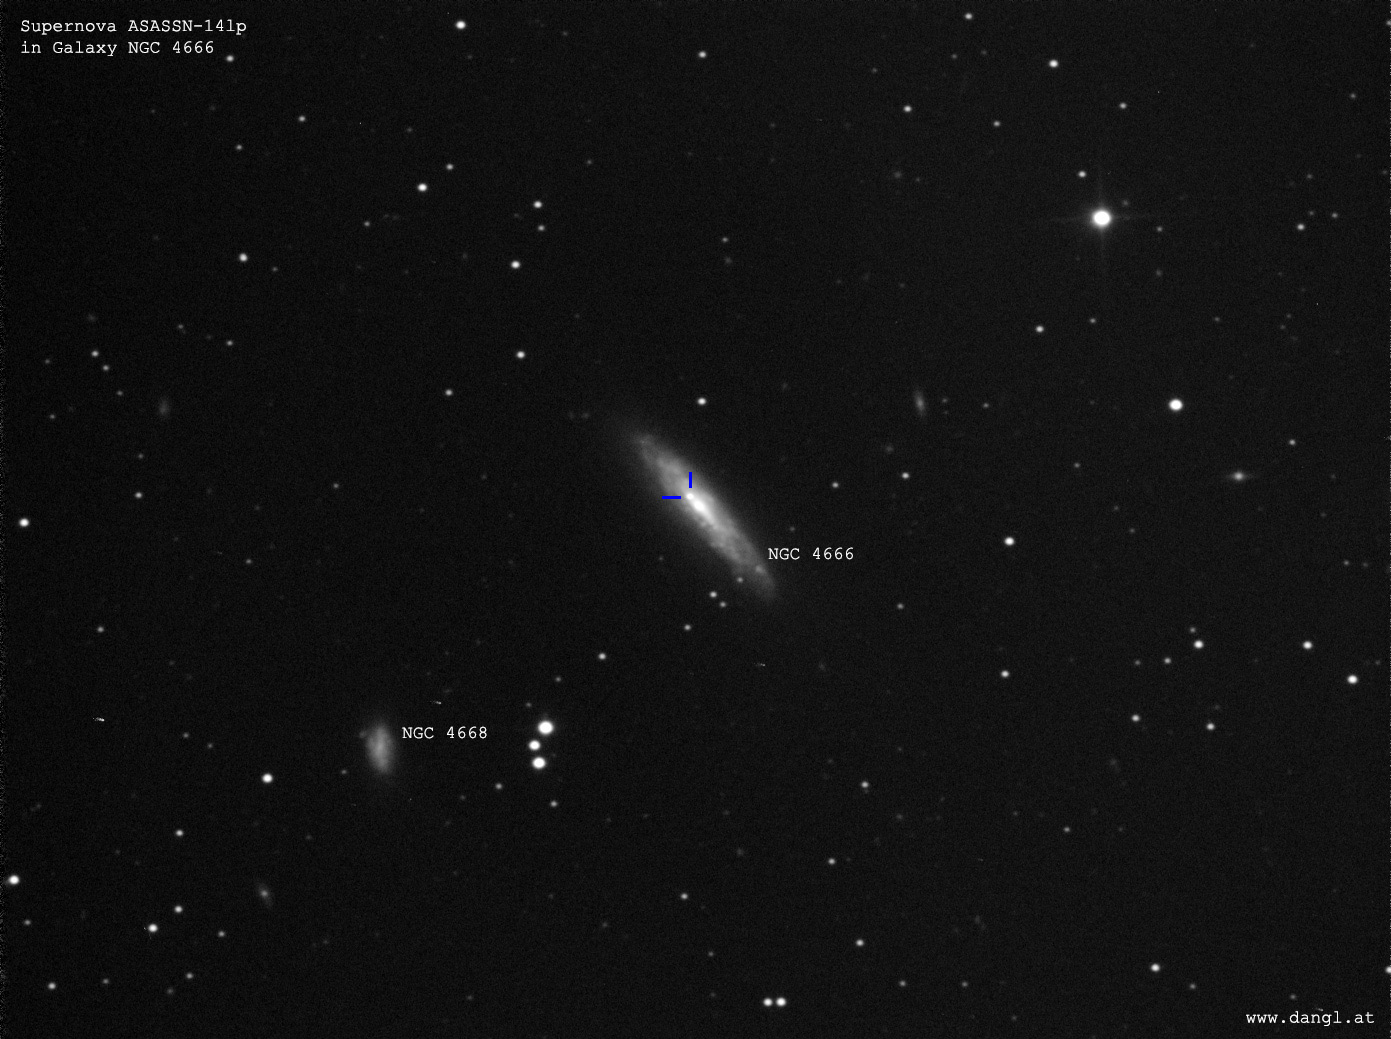 Supernova ASASSN-14lp am 15. Februar 2015